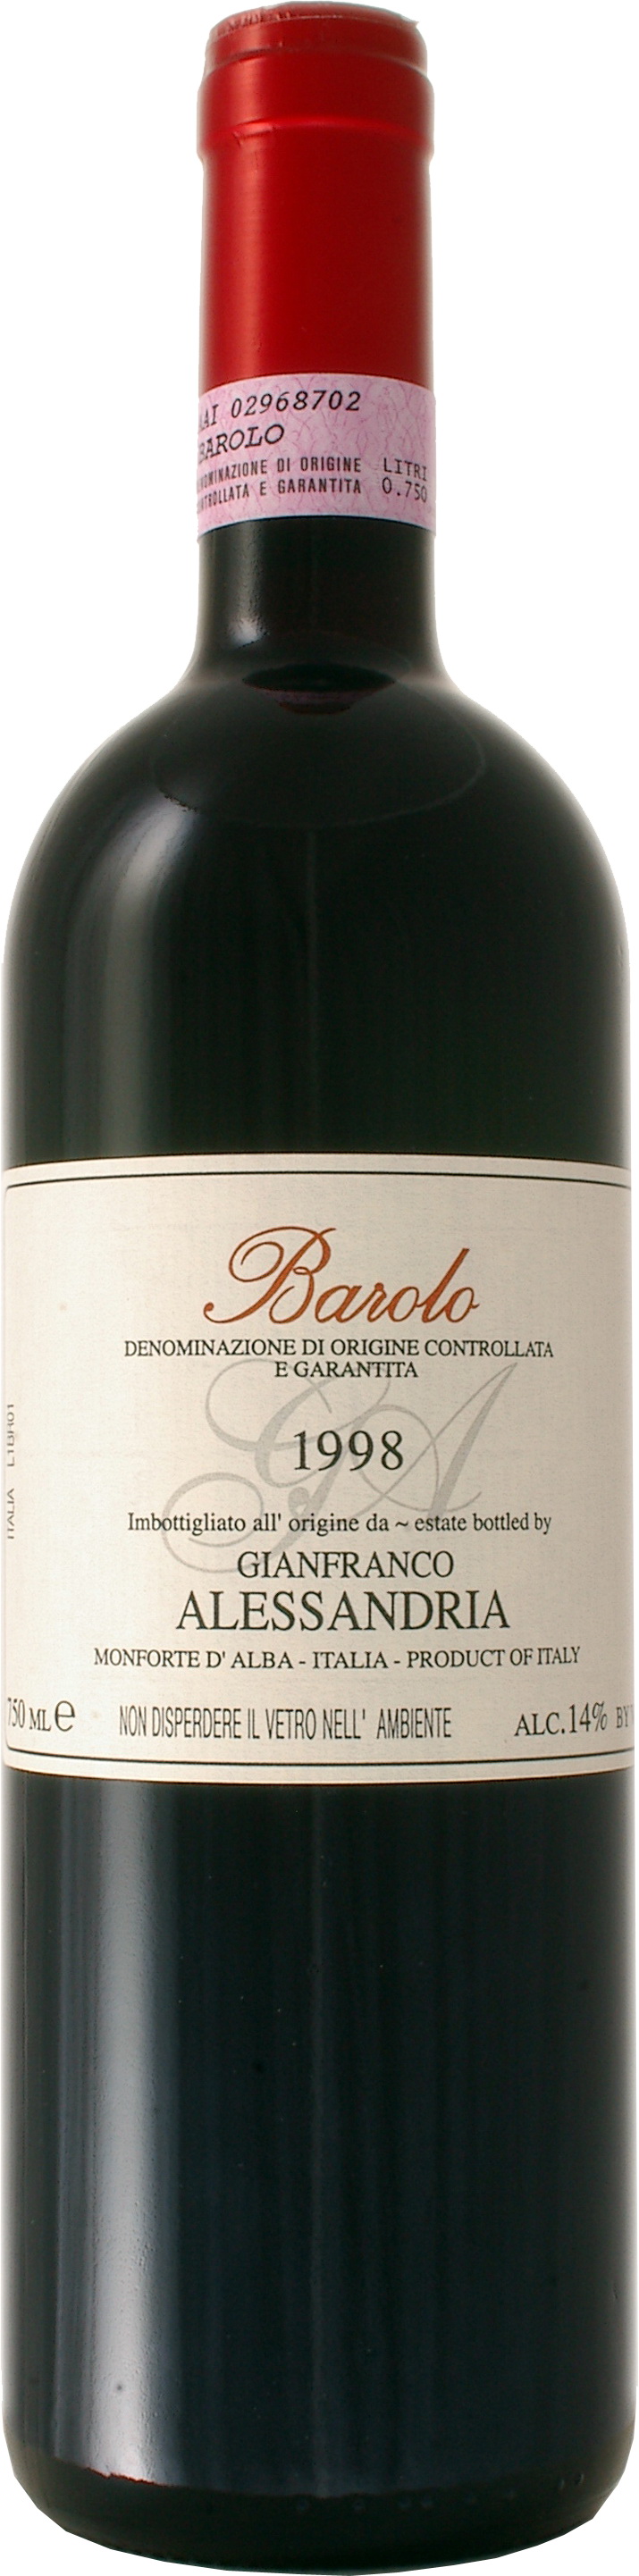 Джанфранко Алессандрия Бароло 2003 DOCG - 0,75 л